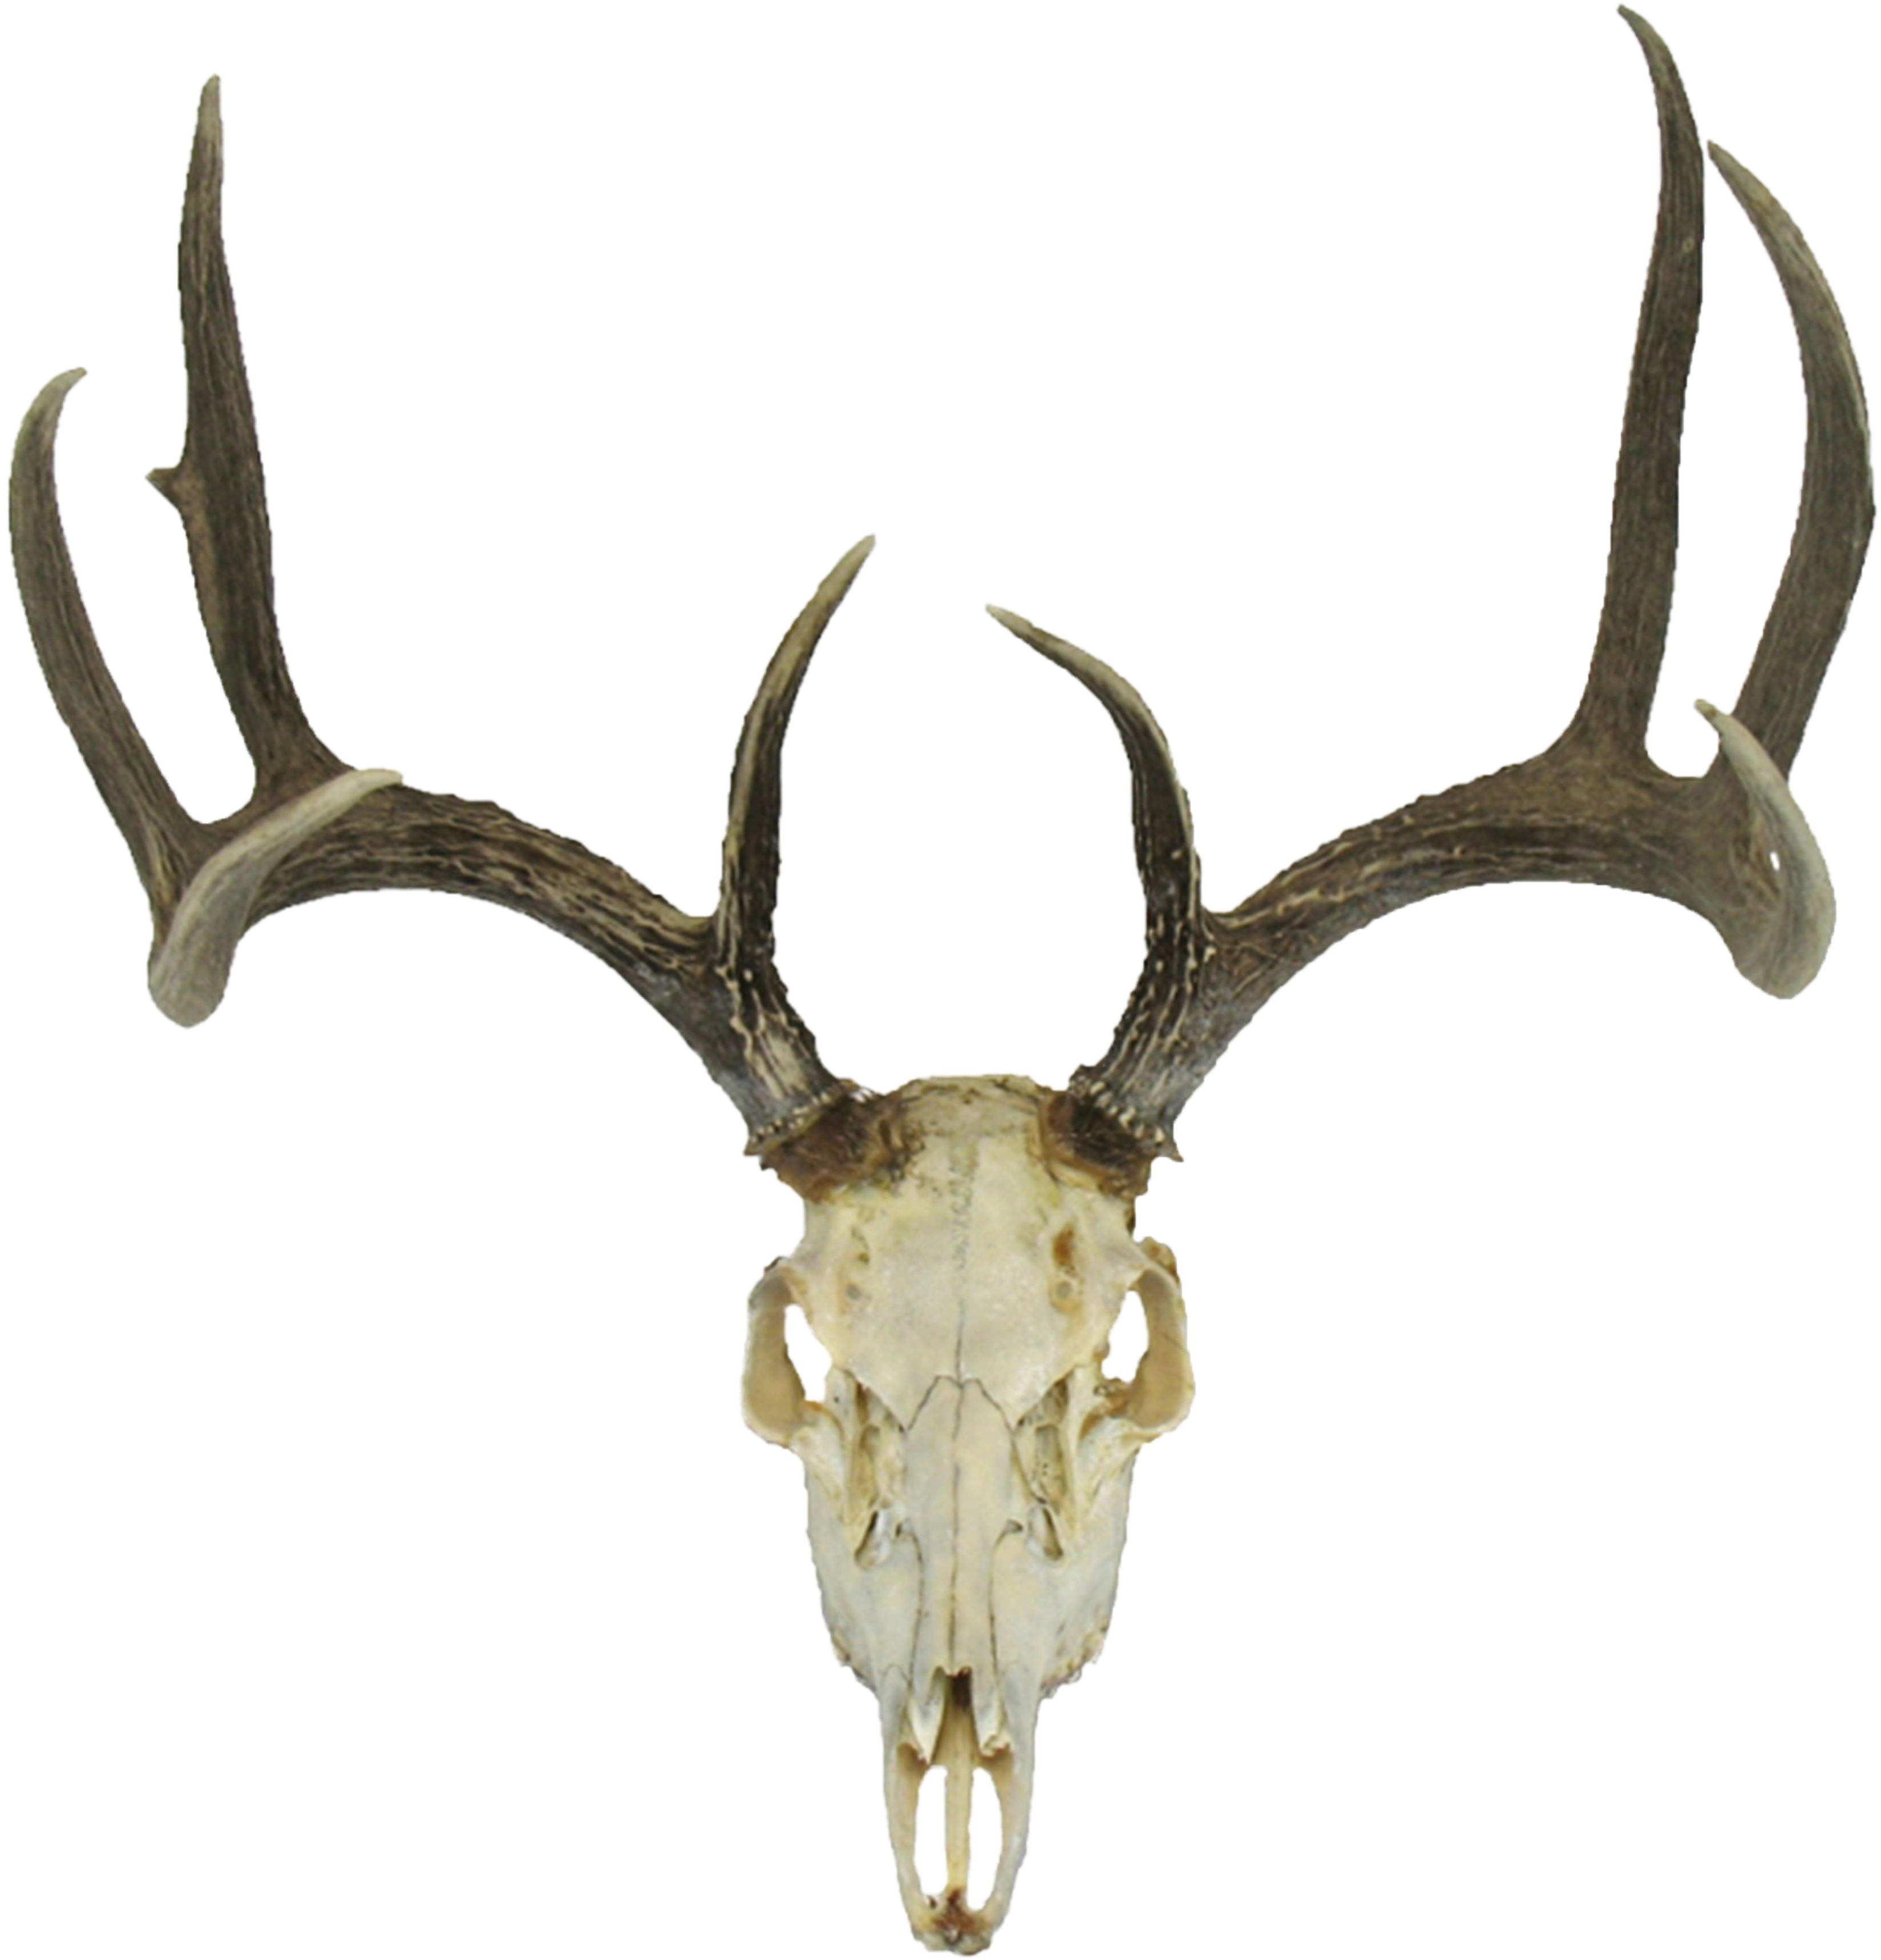 deer head, brain, skull silhouette png background hd download